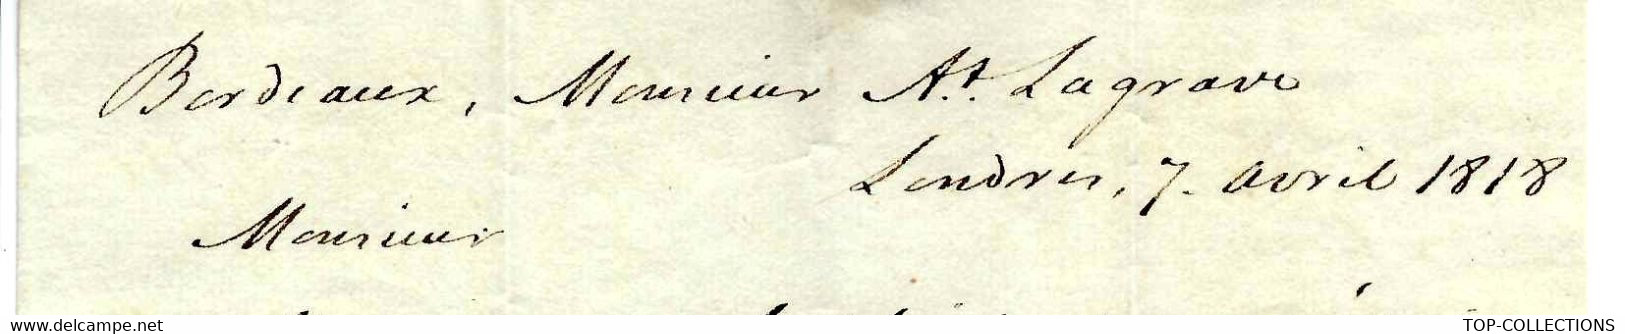 1818 PROTESTANTISME NECKER  COMPAGNIE DES INDES  COMMERCE NEGOCE INTERNATIONAL  Par James Bourdieu & Sons à Londres - Historical Documents